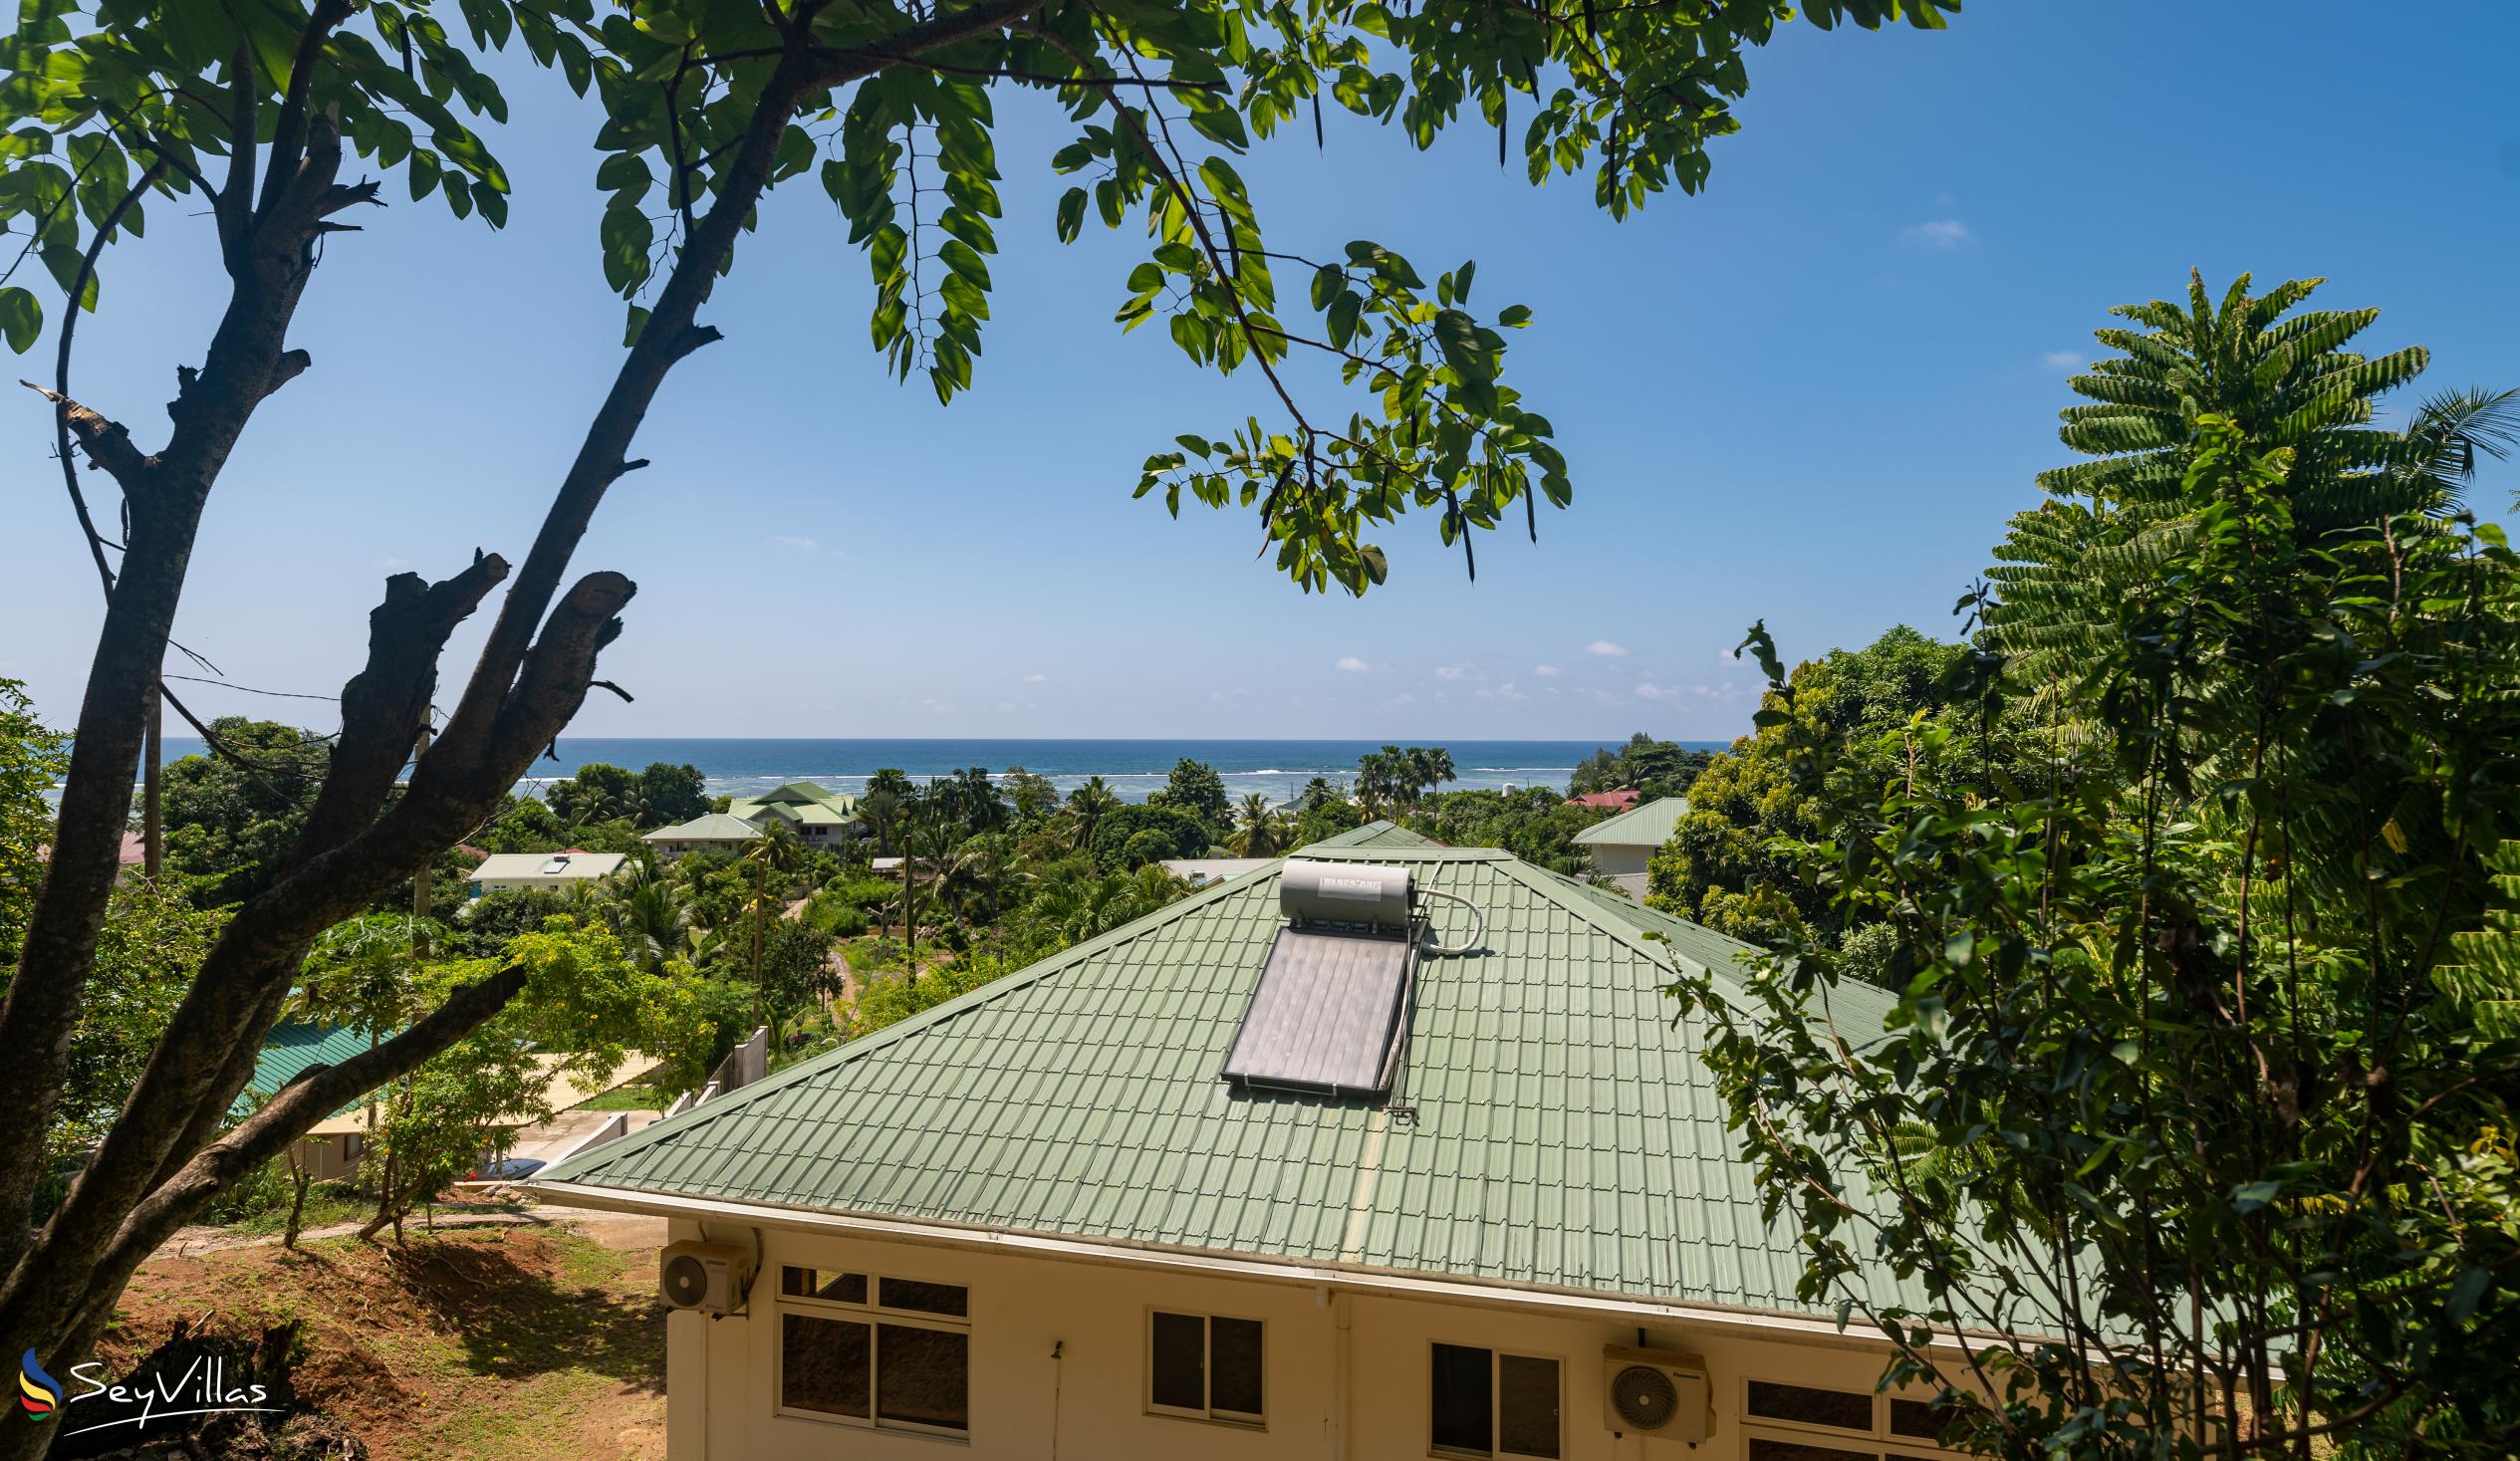 Foto 18: Maison Marikel - Extérieur - Mahé (Seychelles)